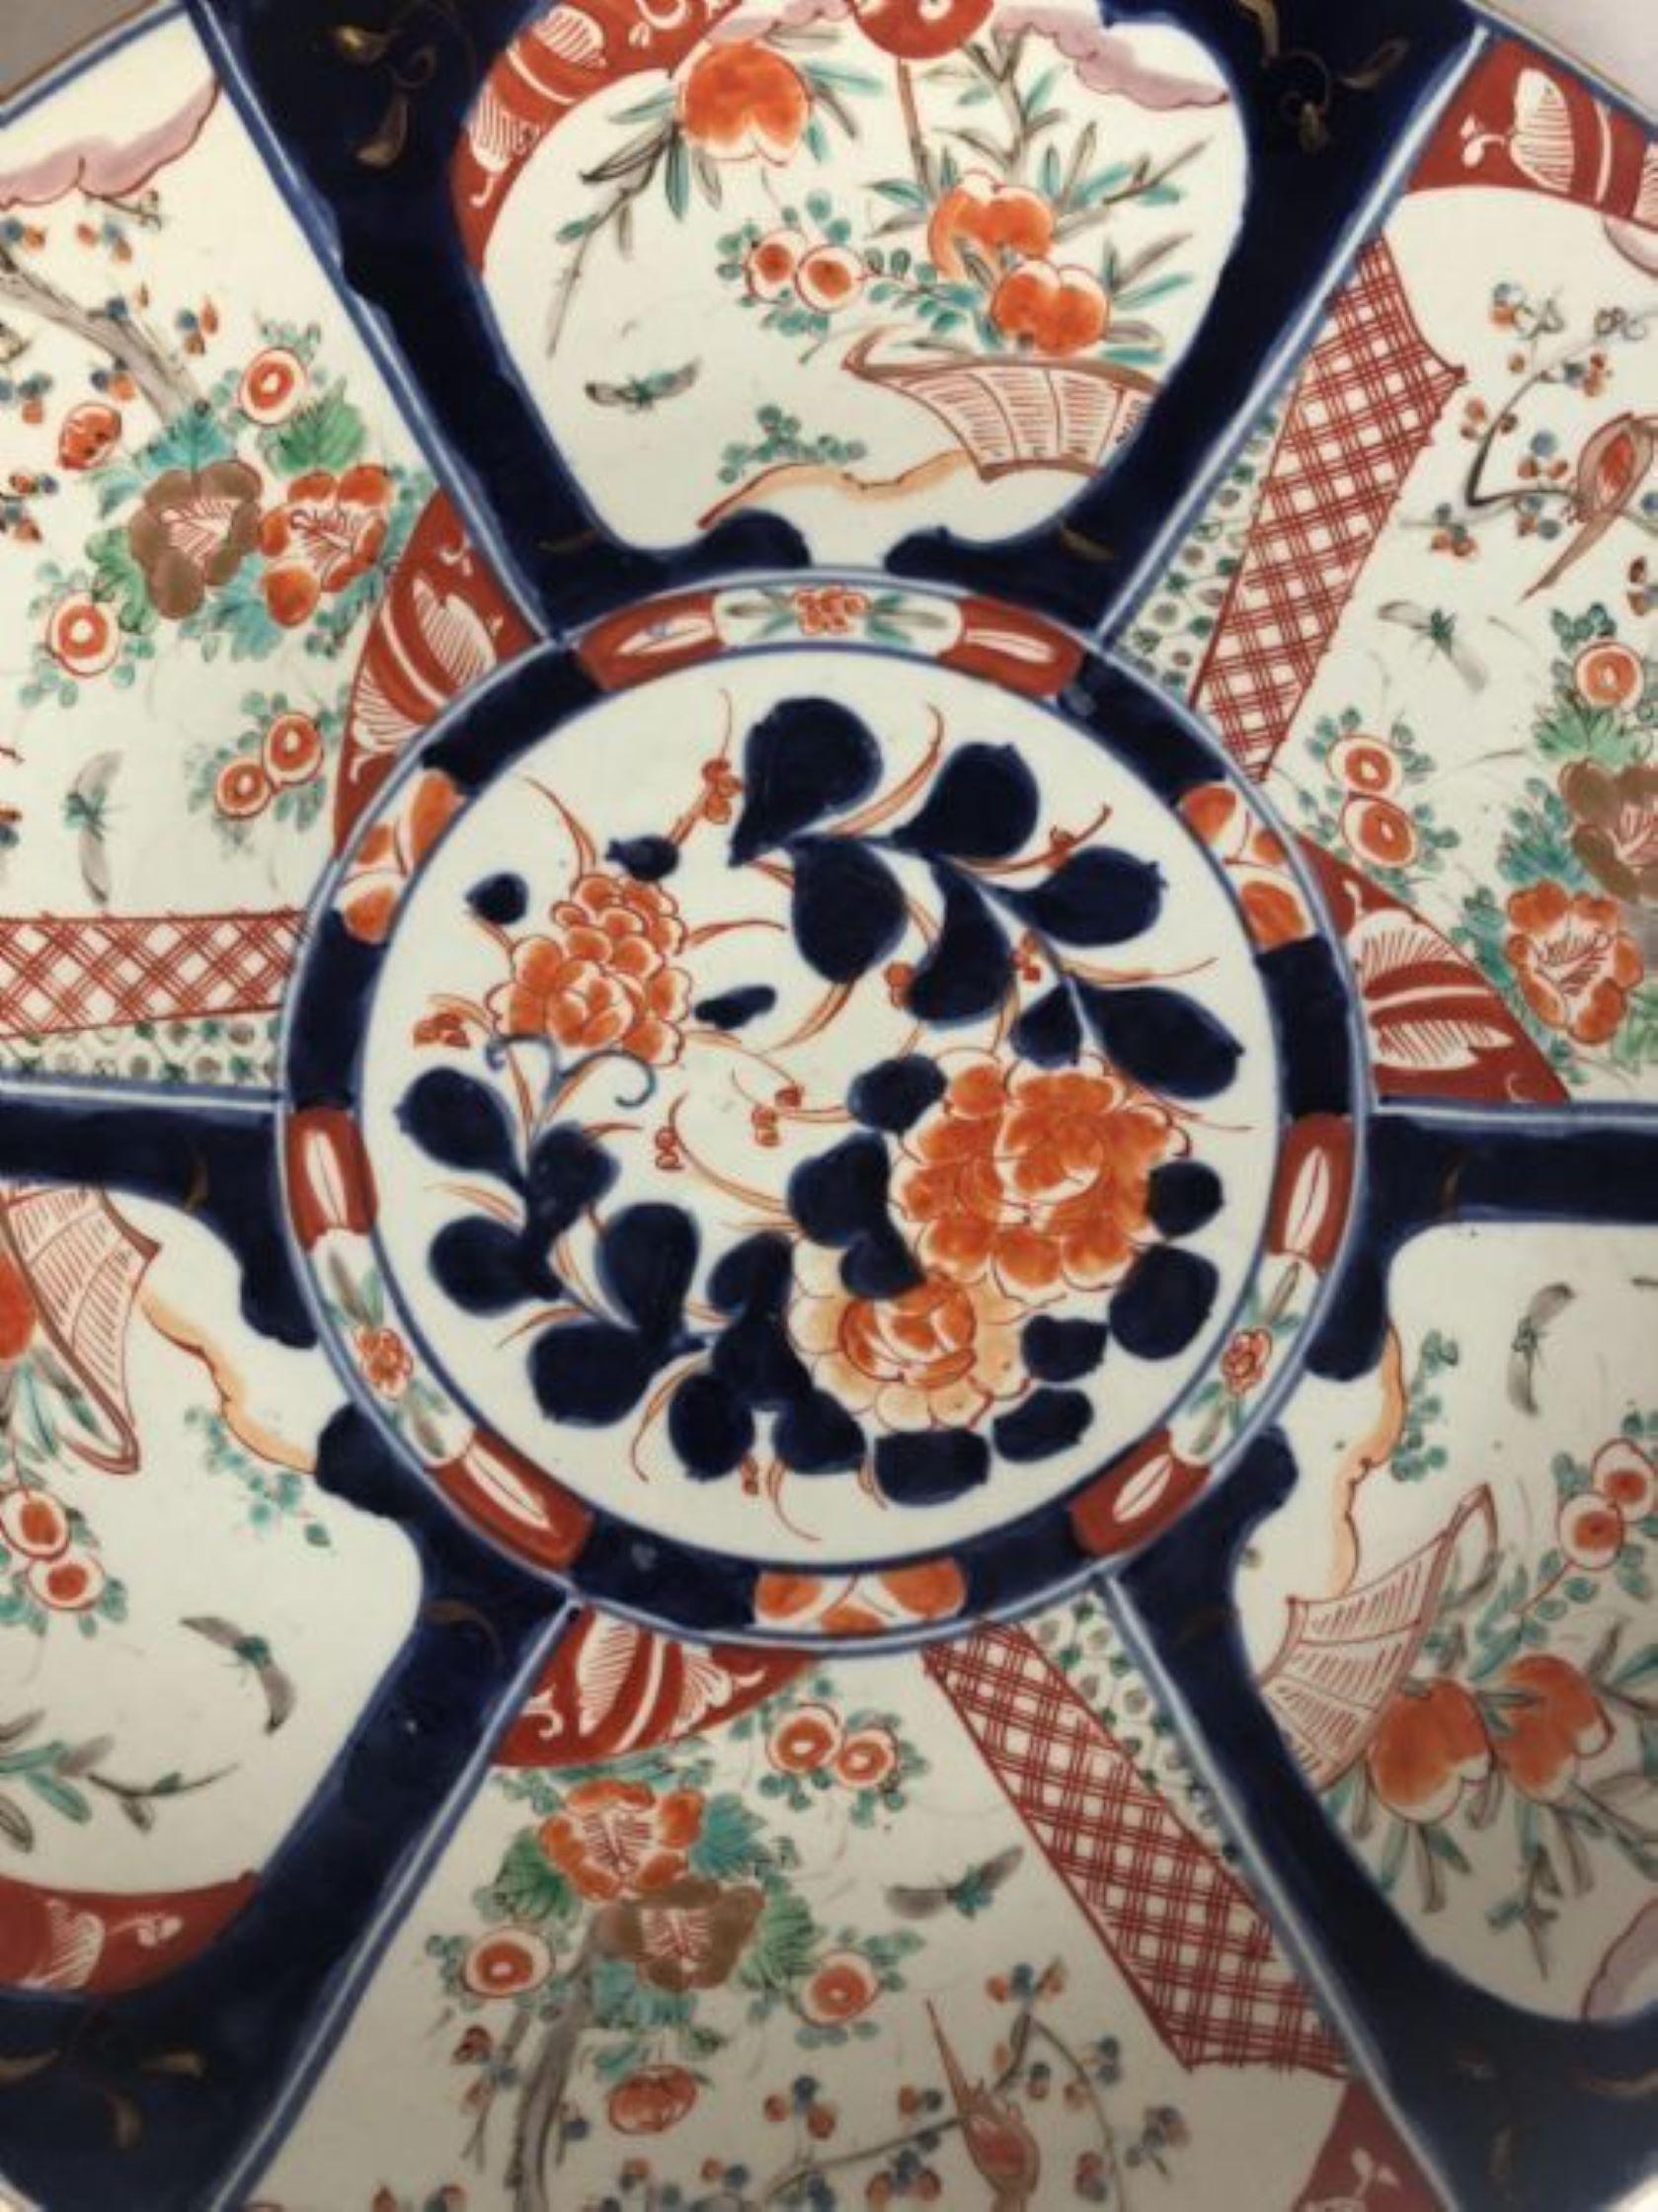 Großes antikes japanisches Imari Ladegerät, handbemalt. Mit wunderschönen handbemalten Tafeln mit Blumen, Blättern, Bäumen und Vögeln in den Farben Rot, Blau, Grün, Weiß und Gold.
